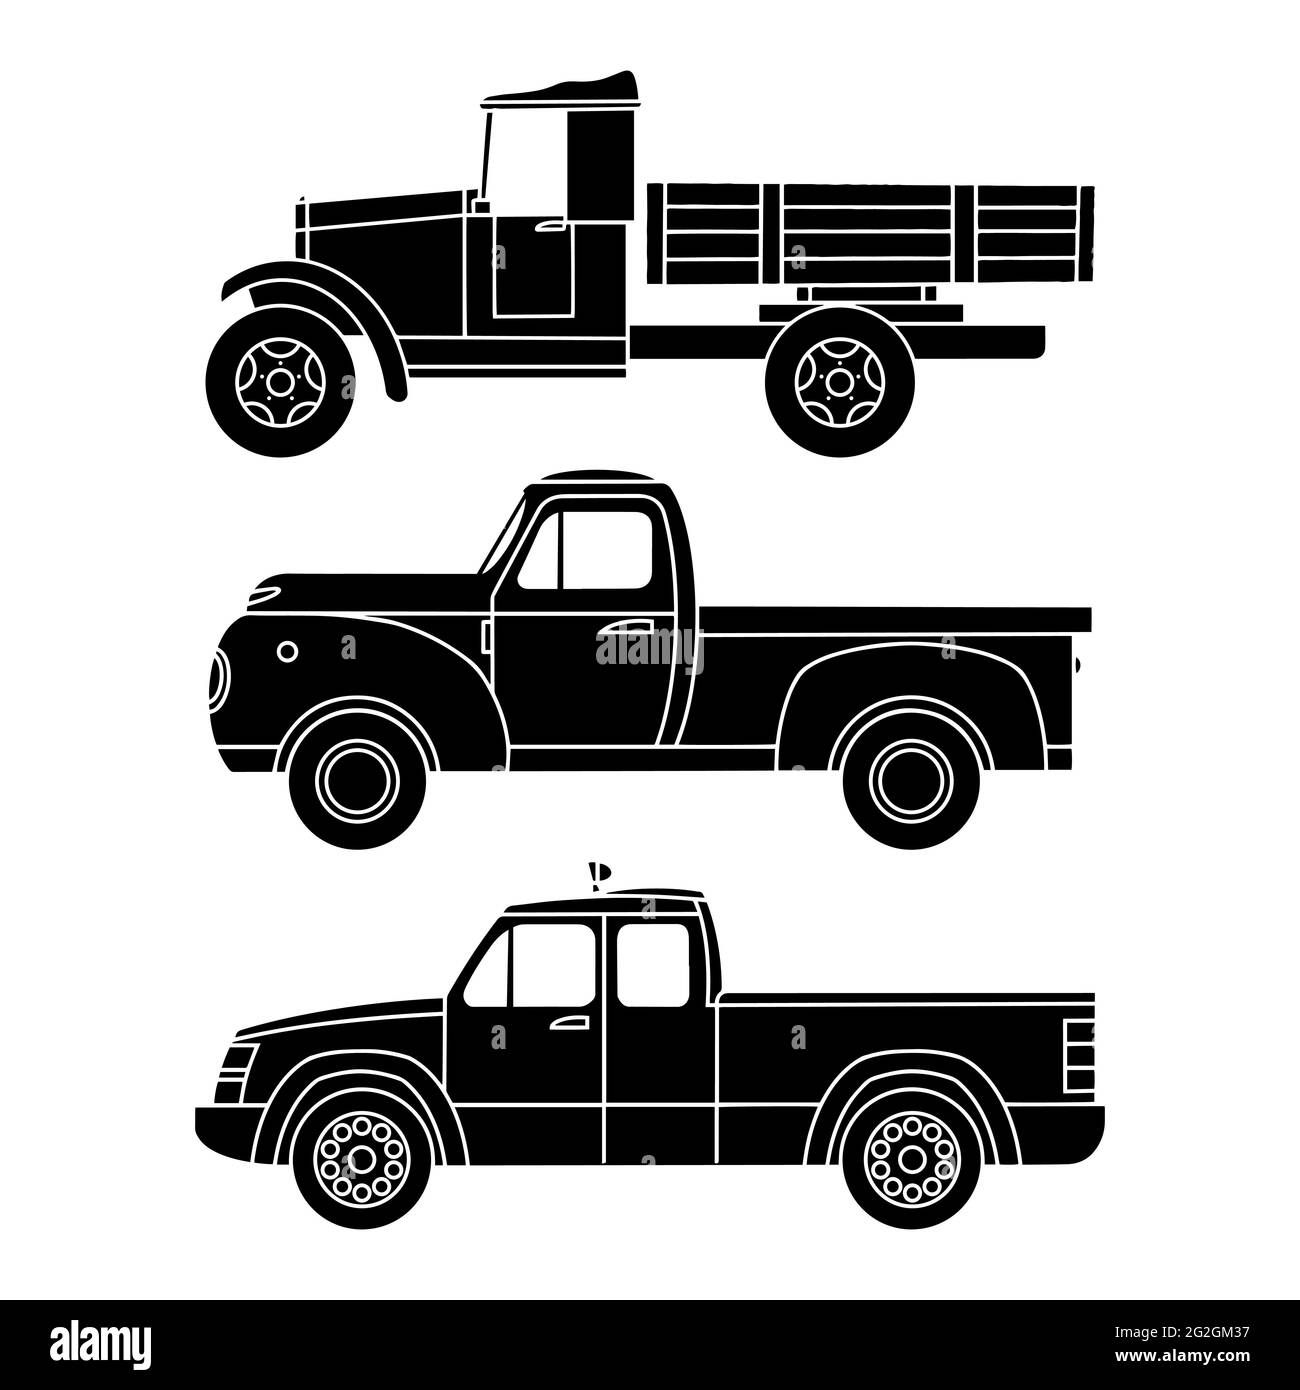 Un ensemble de camions vintage personnalisés. Silhouettes noires, vue latérale. Illustration vectorielle Illustration de Vecteur